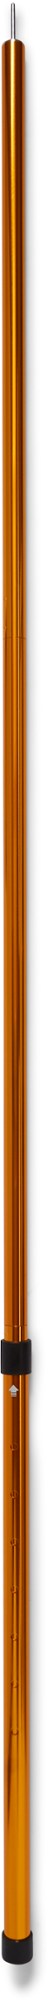 Регулируемый брезентовый столб - одинарный REI Co-op, оранжевый